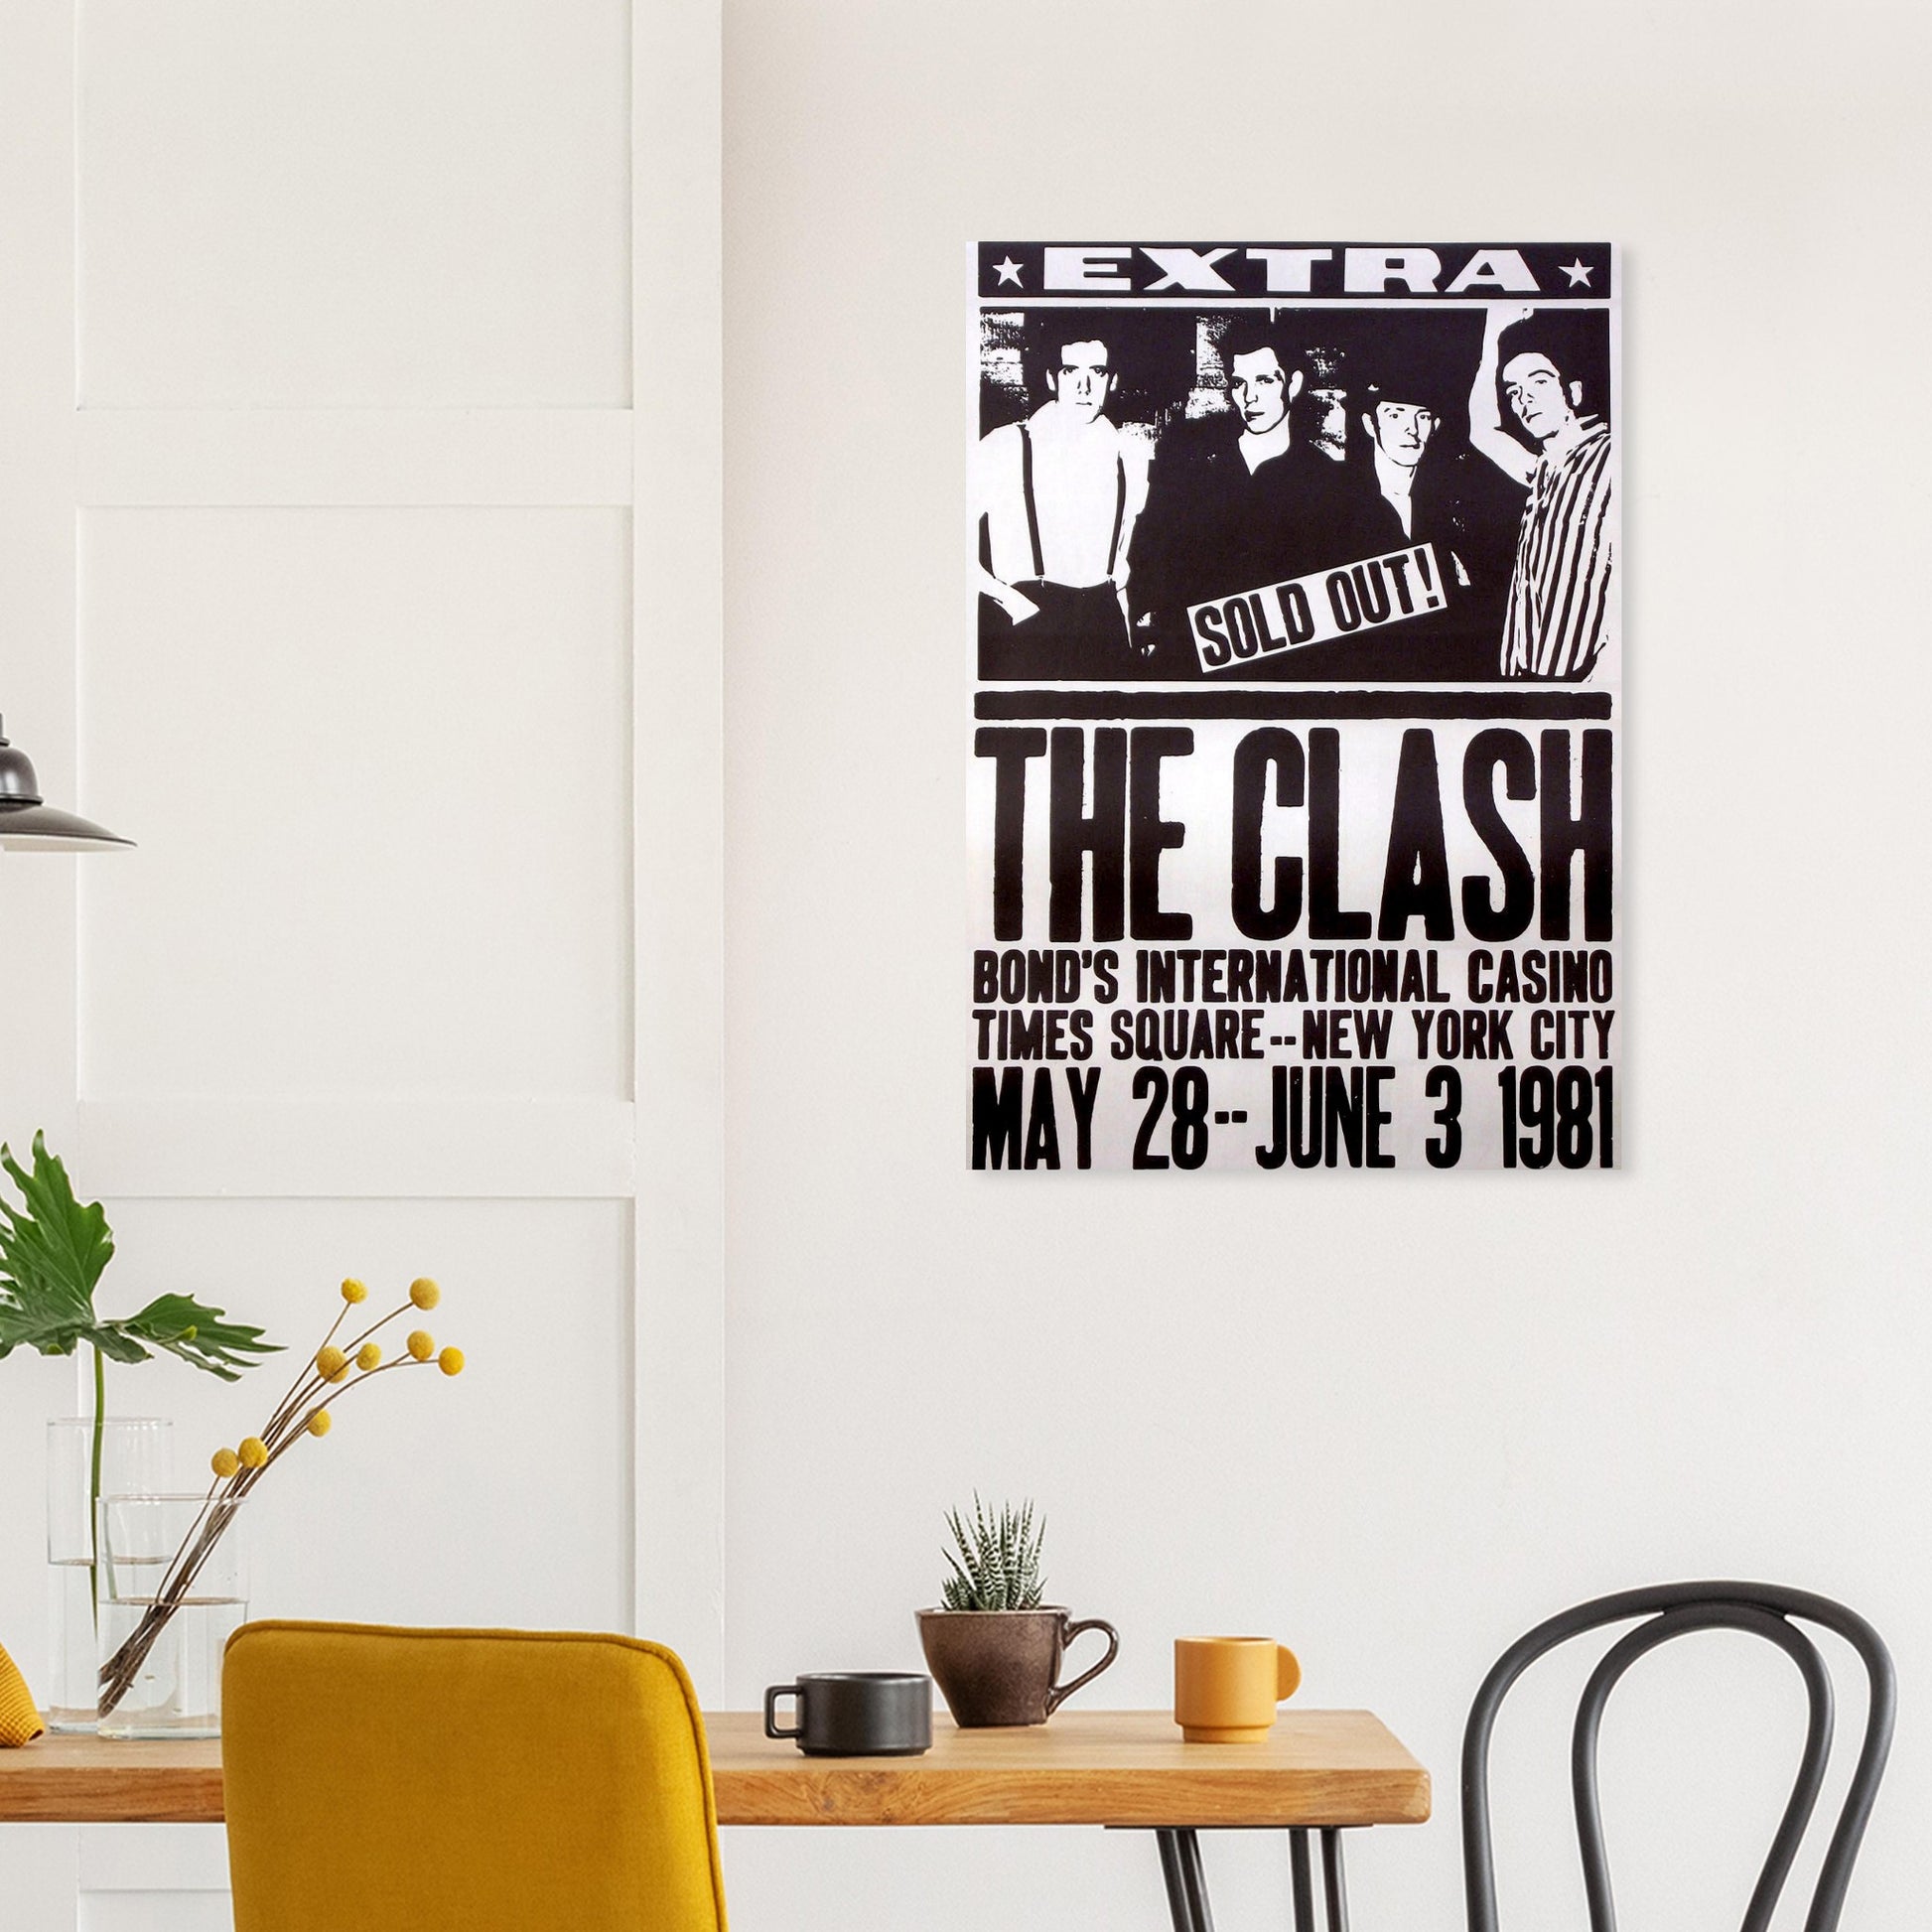 The Clash Vintage Poster Reprint on Premium Matte Paper - Posterify